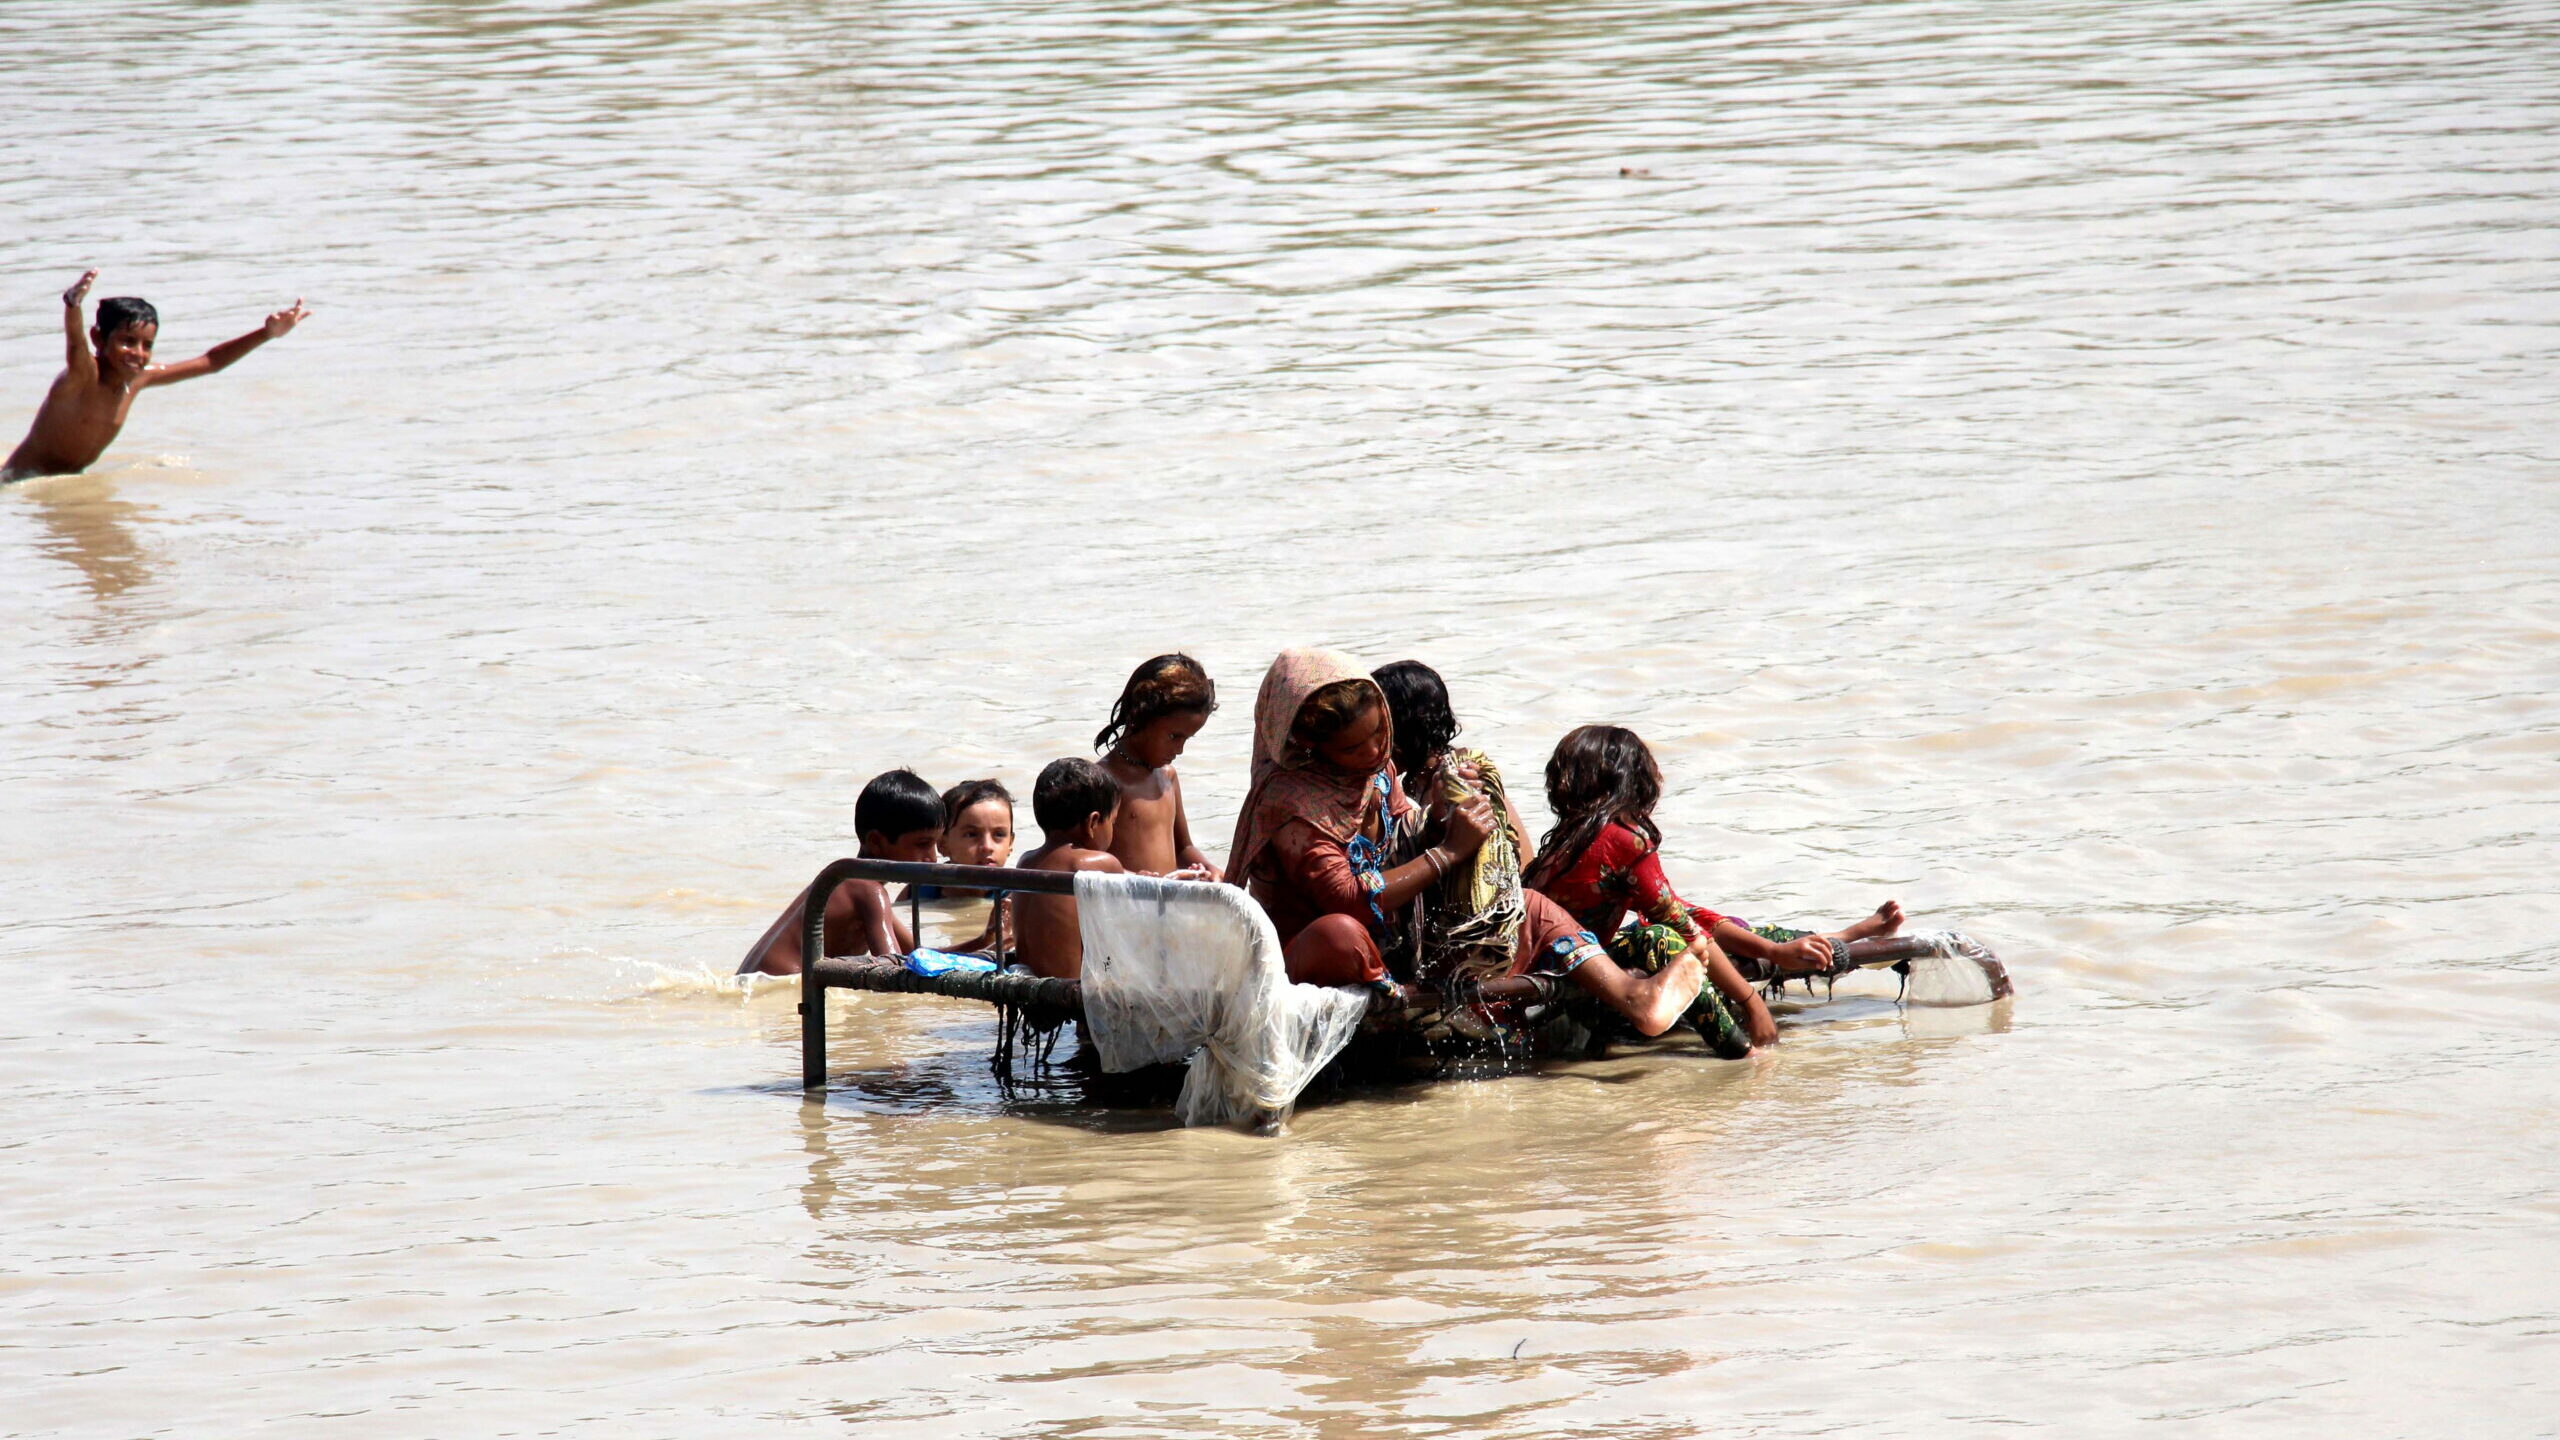 Personas afectadas por las inundaciones esperan ayuda en Sukkur, provincia de Sindh, Pakistán. EFE/ Waqar Hussain